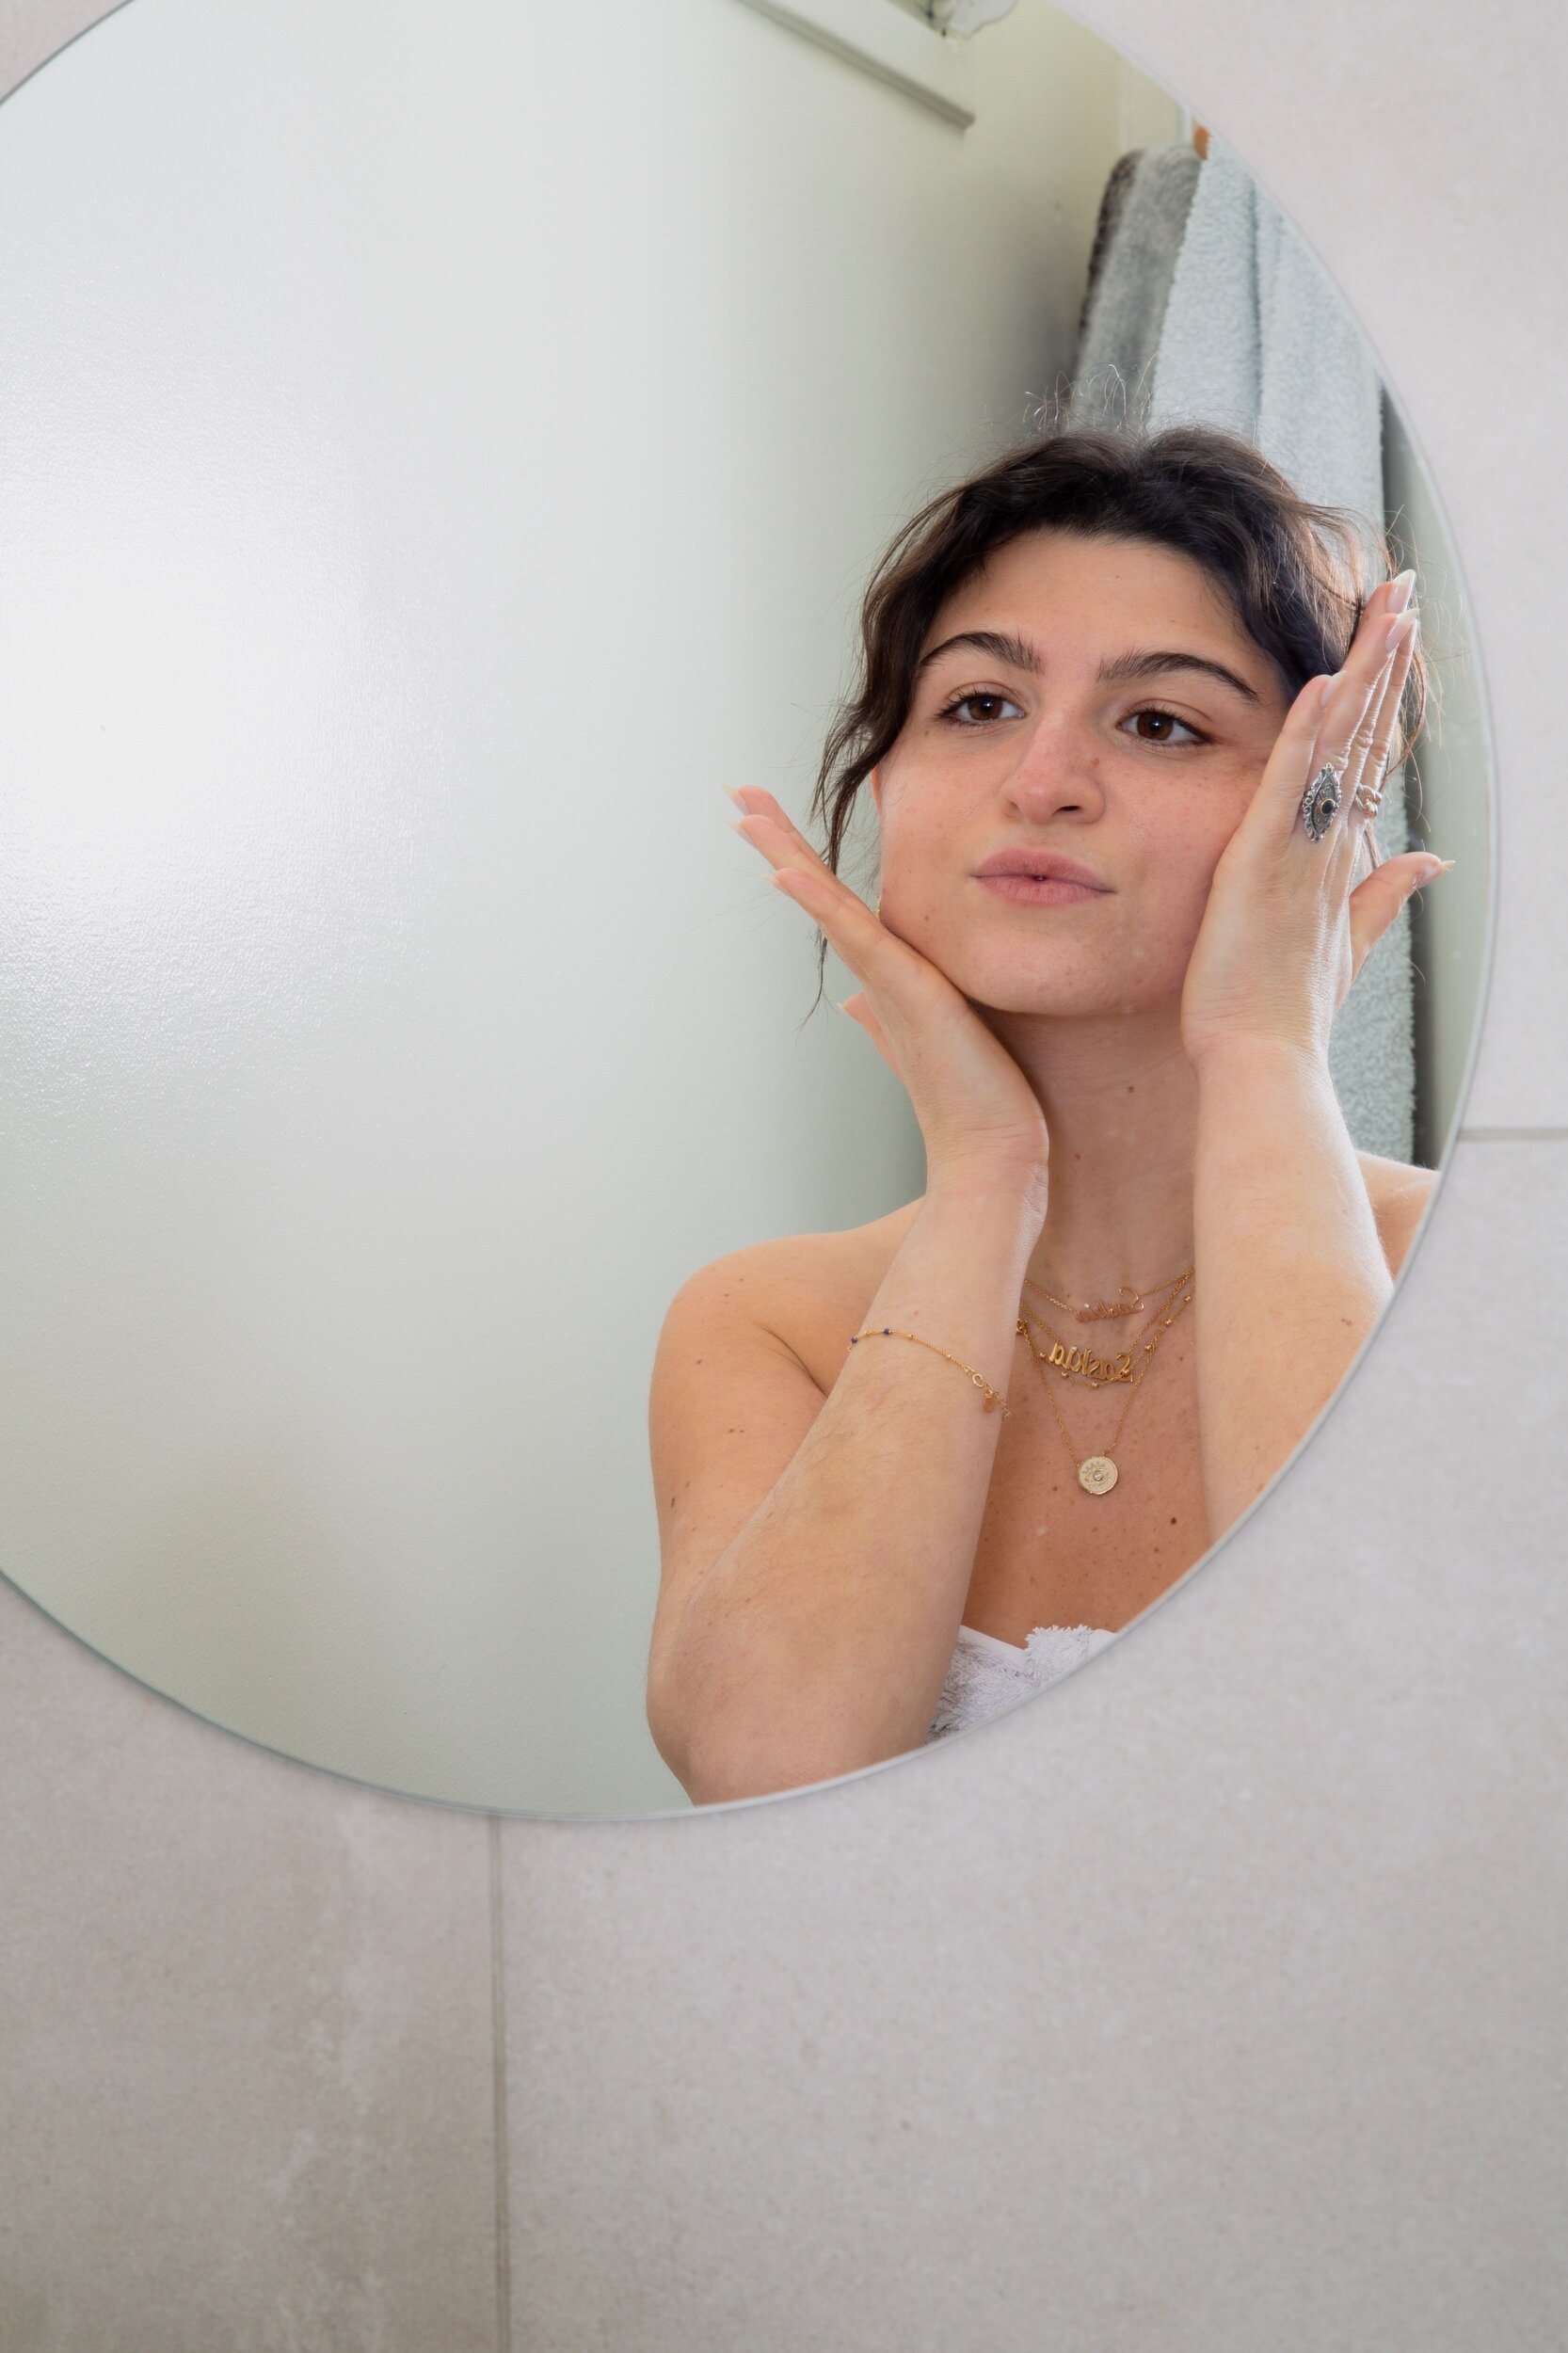 La routine visage pour une peau acnéique - Mademoiselle bio